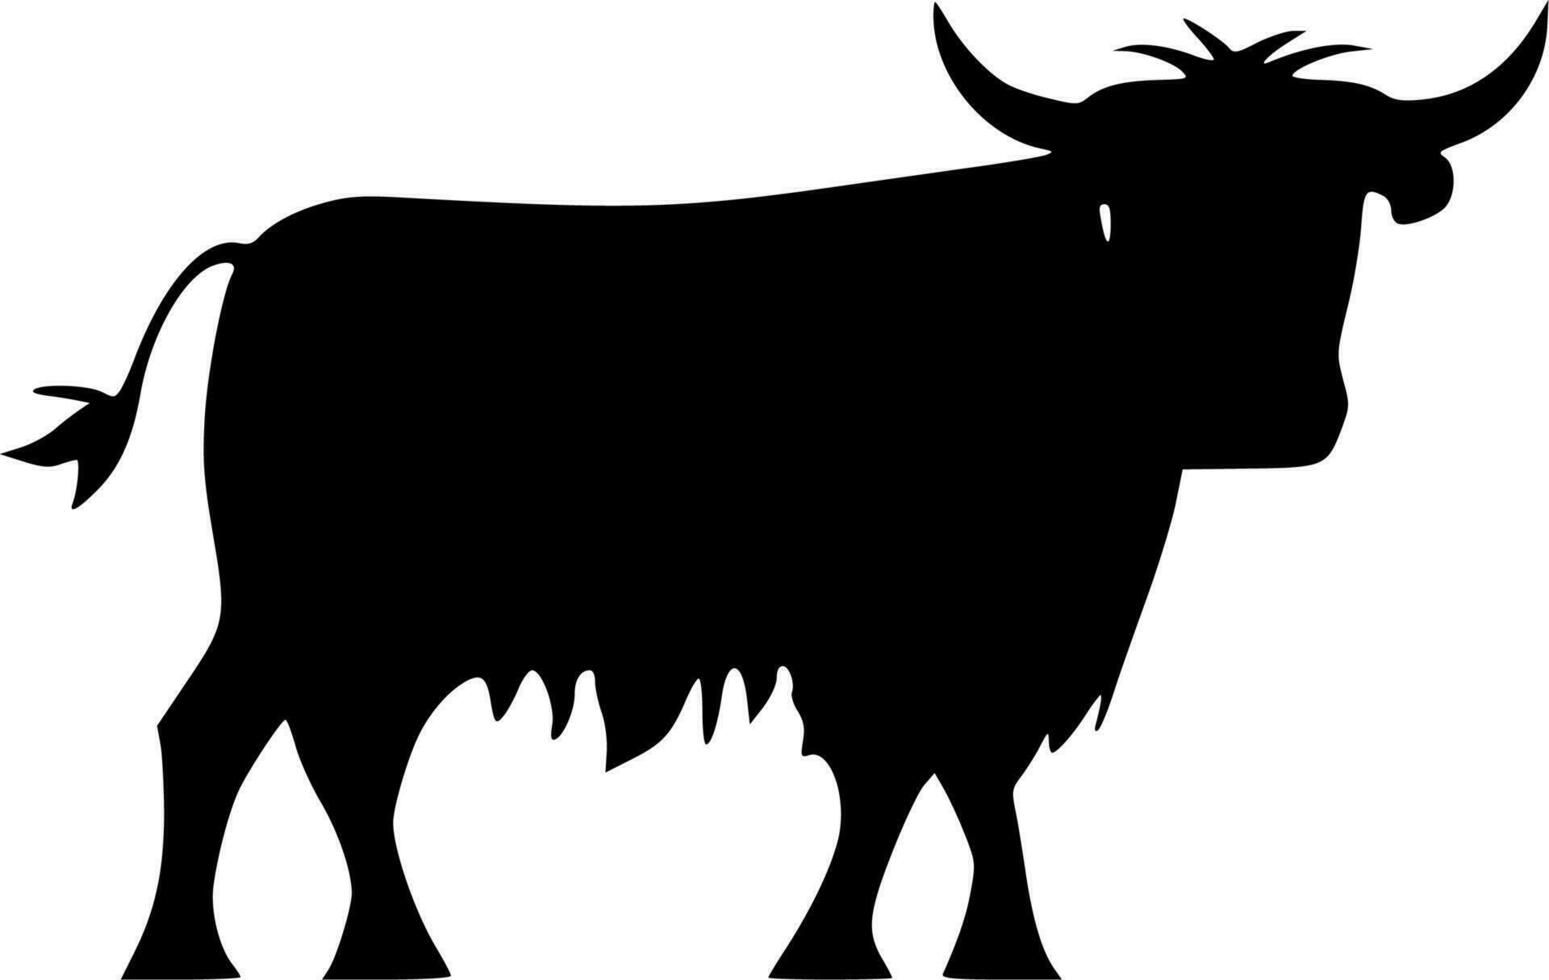 hoogland koe - hoog kwaliteit vector logo - vector illustratie ideaal voor t-shirt grafisch